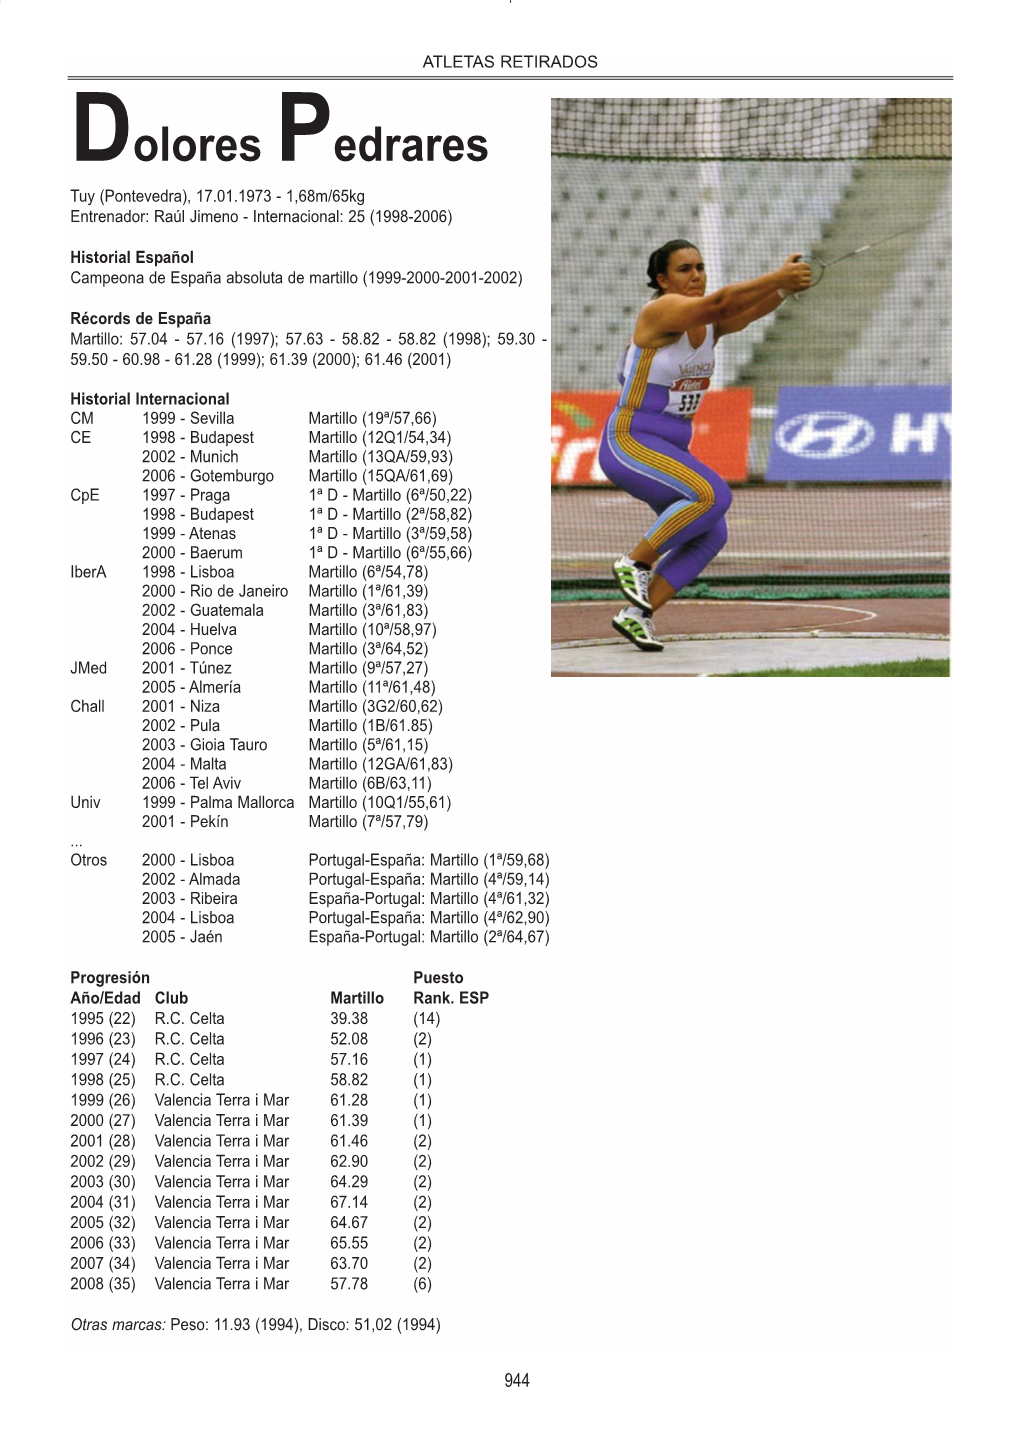 Dolores Pedrares Tuy (Pontevedra), 17.01.1973 - 1,68M/65Kg Entrenador: Raúl Jimeno - Internacional: 25 (1998-2006)